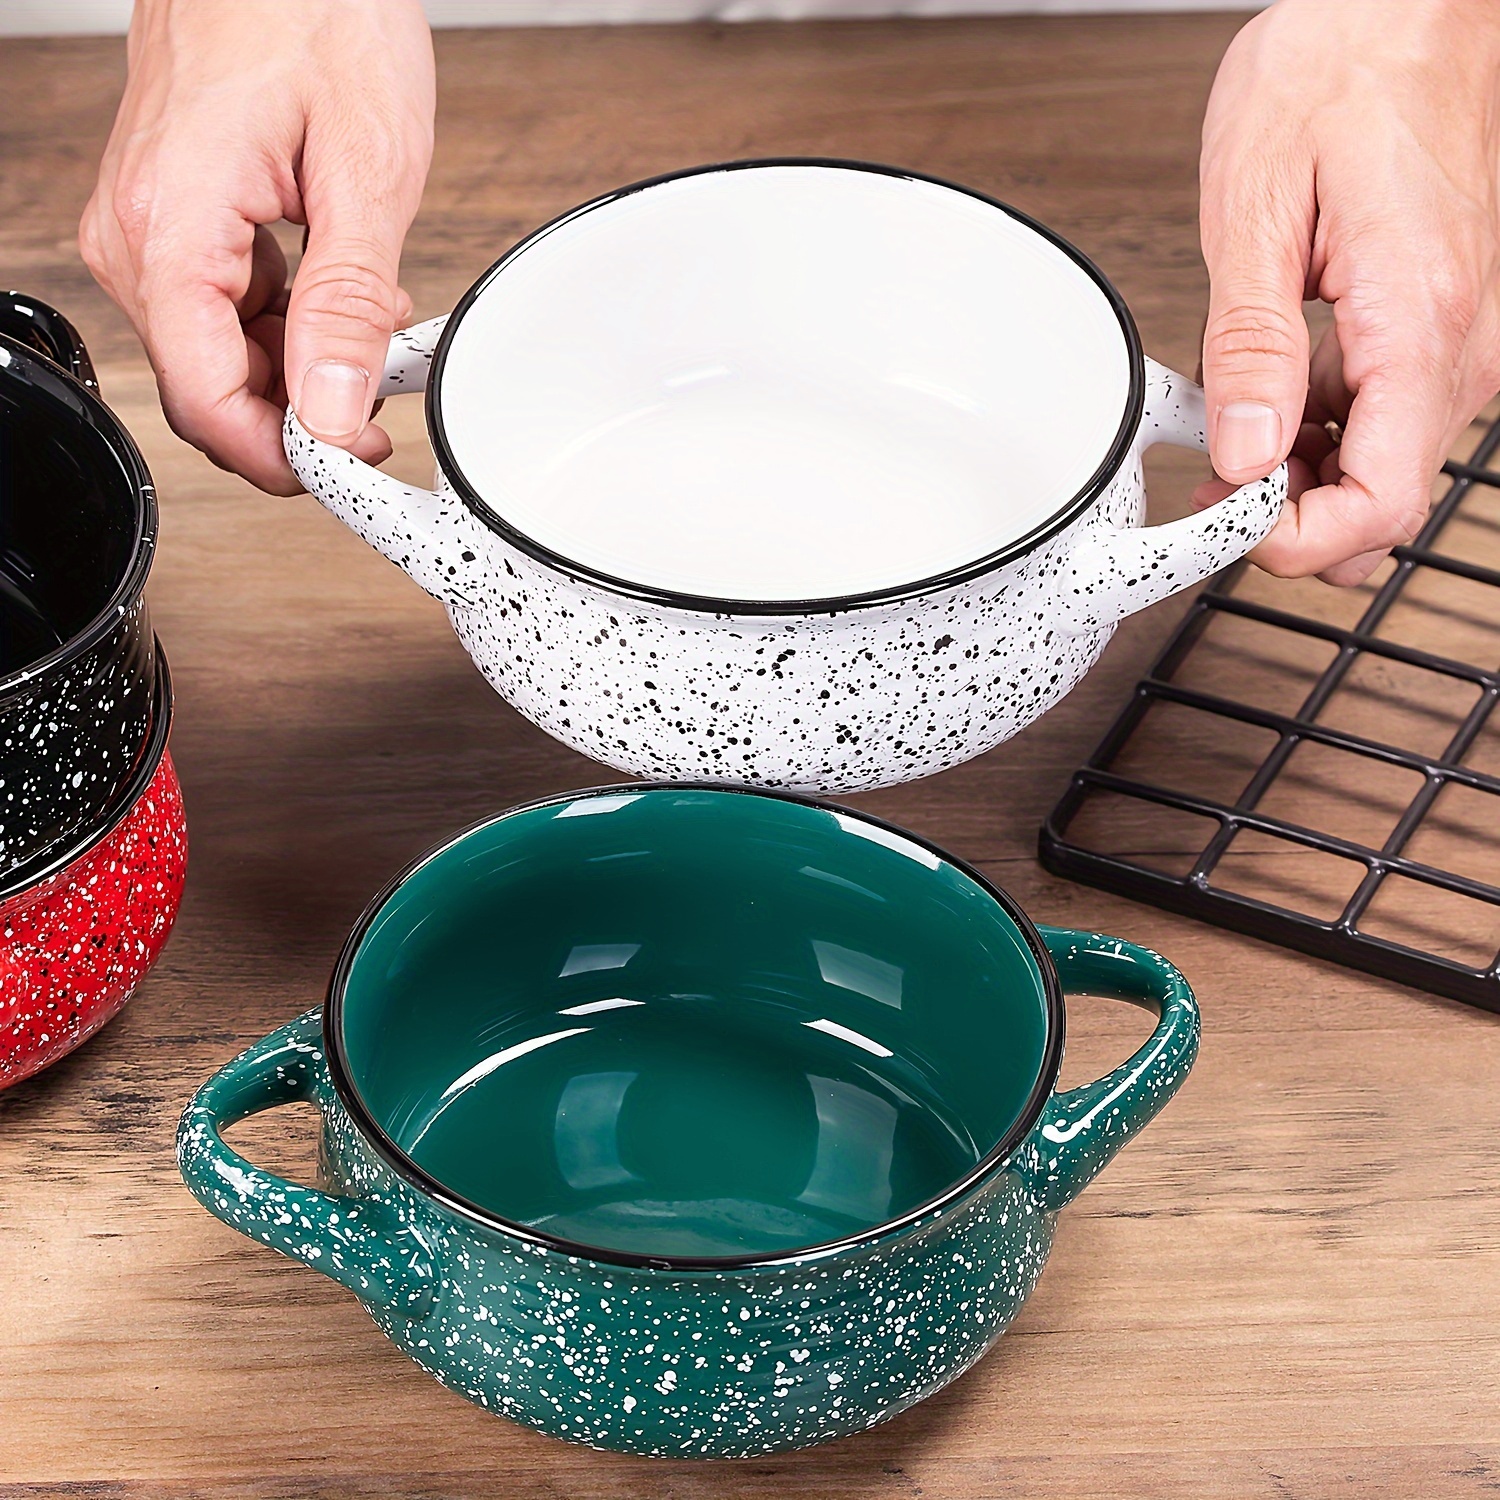 Soup Crocks Bake & Serve Oven Safe Ceramic Soup Bowls With Handles